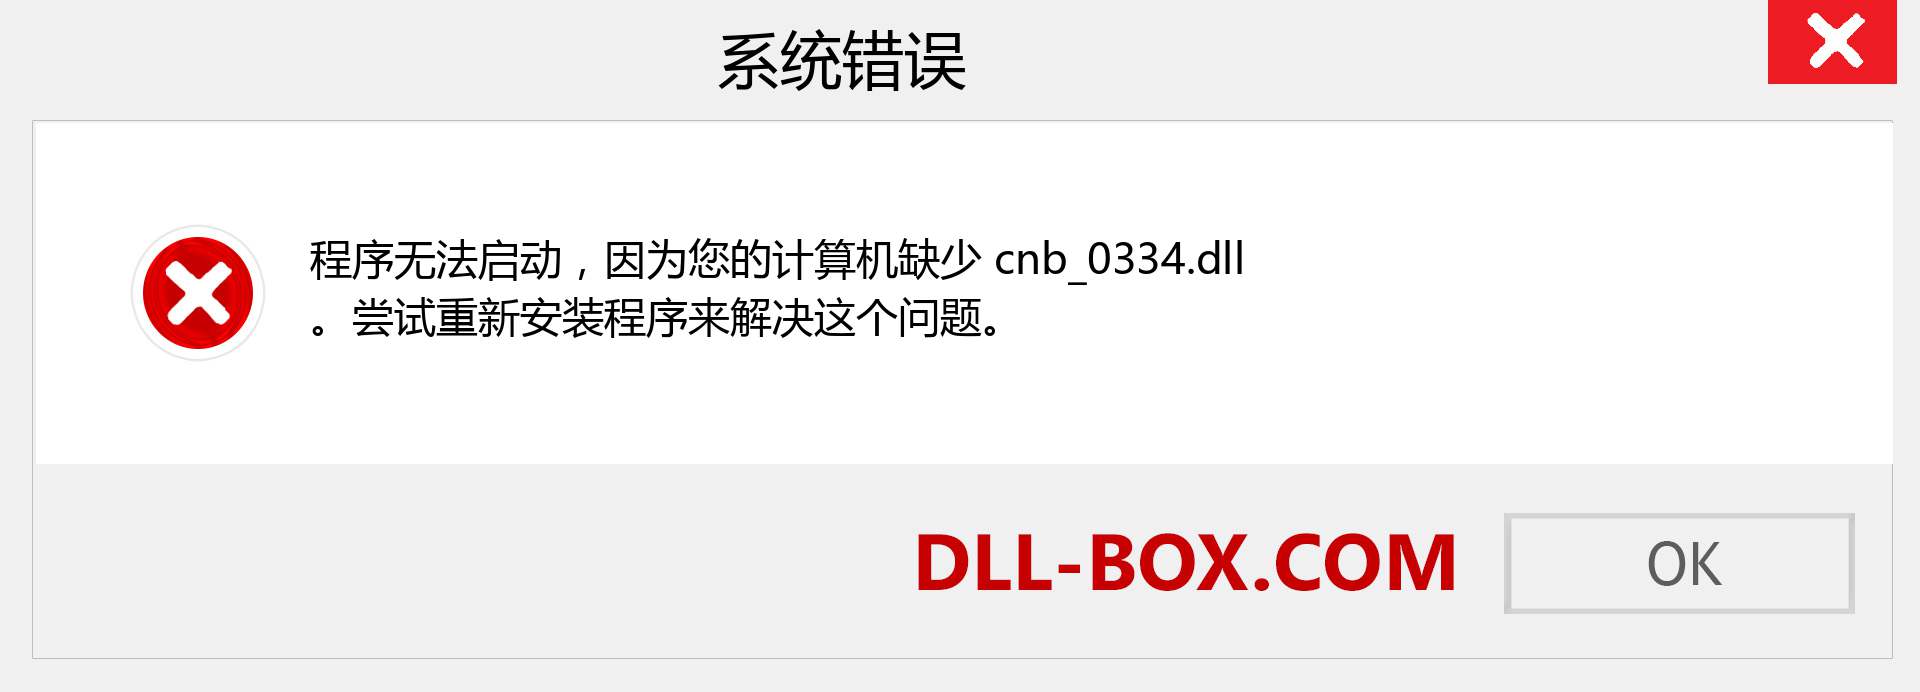 cnb_0334.dll 文件丢失？。 适用于 Windows 7、8、10 的下载 - 修复 Windows、照片、图像上的 cnb_0334 dll 丢失错误